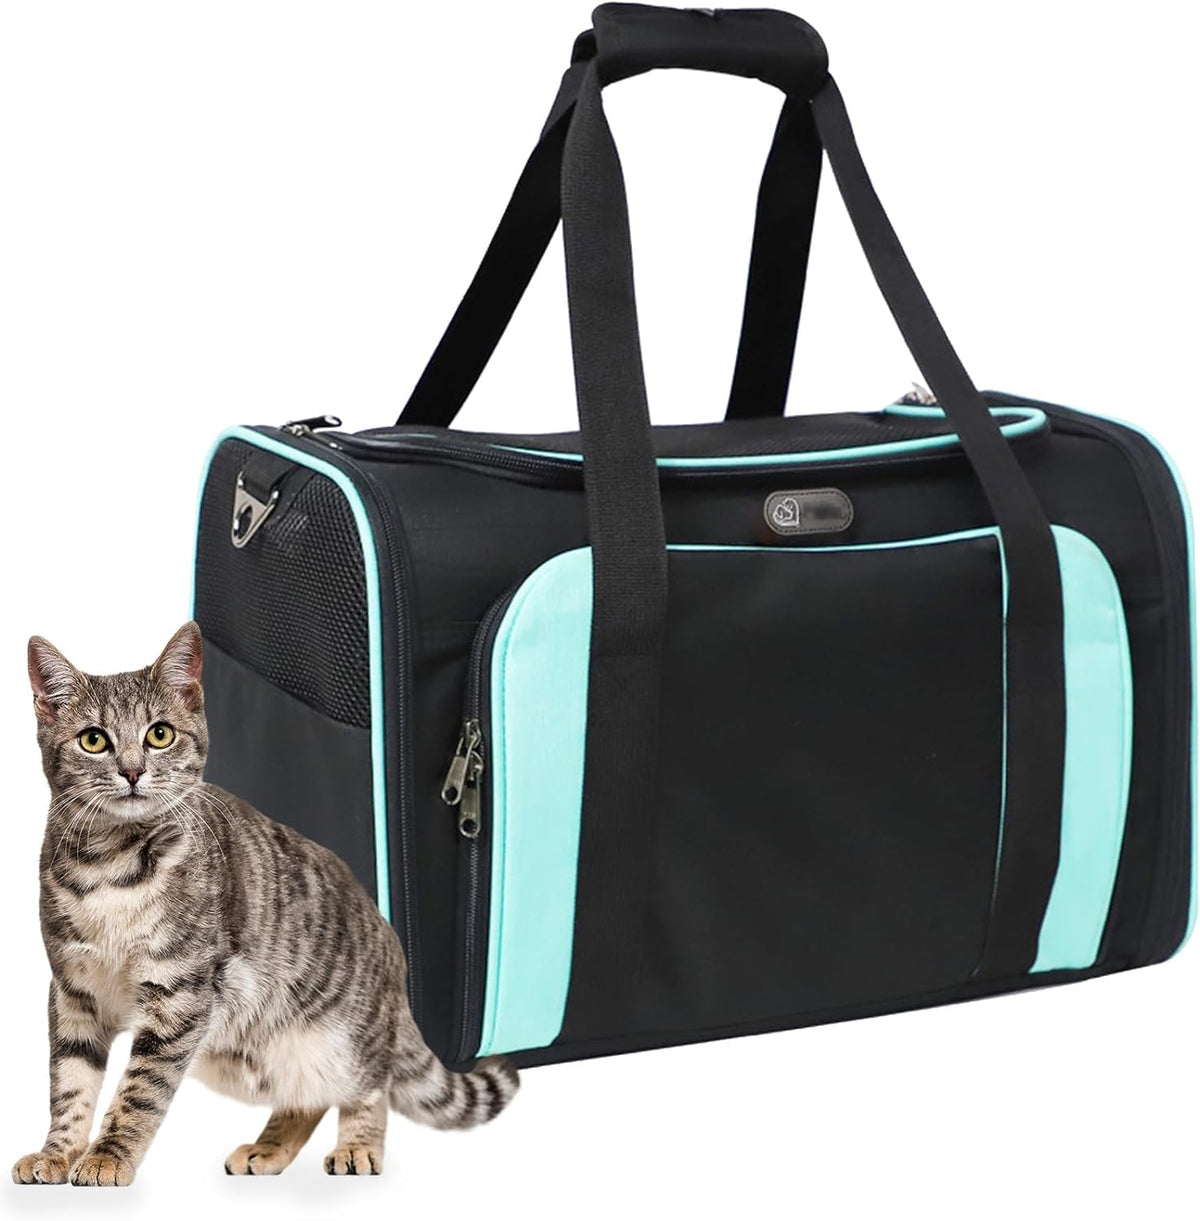 Expandable Pet Carrier Cat Carrier Bag